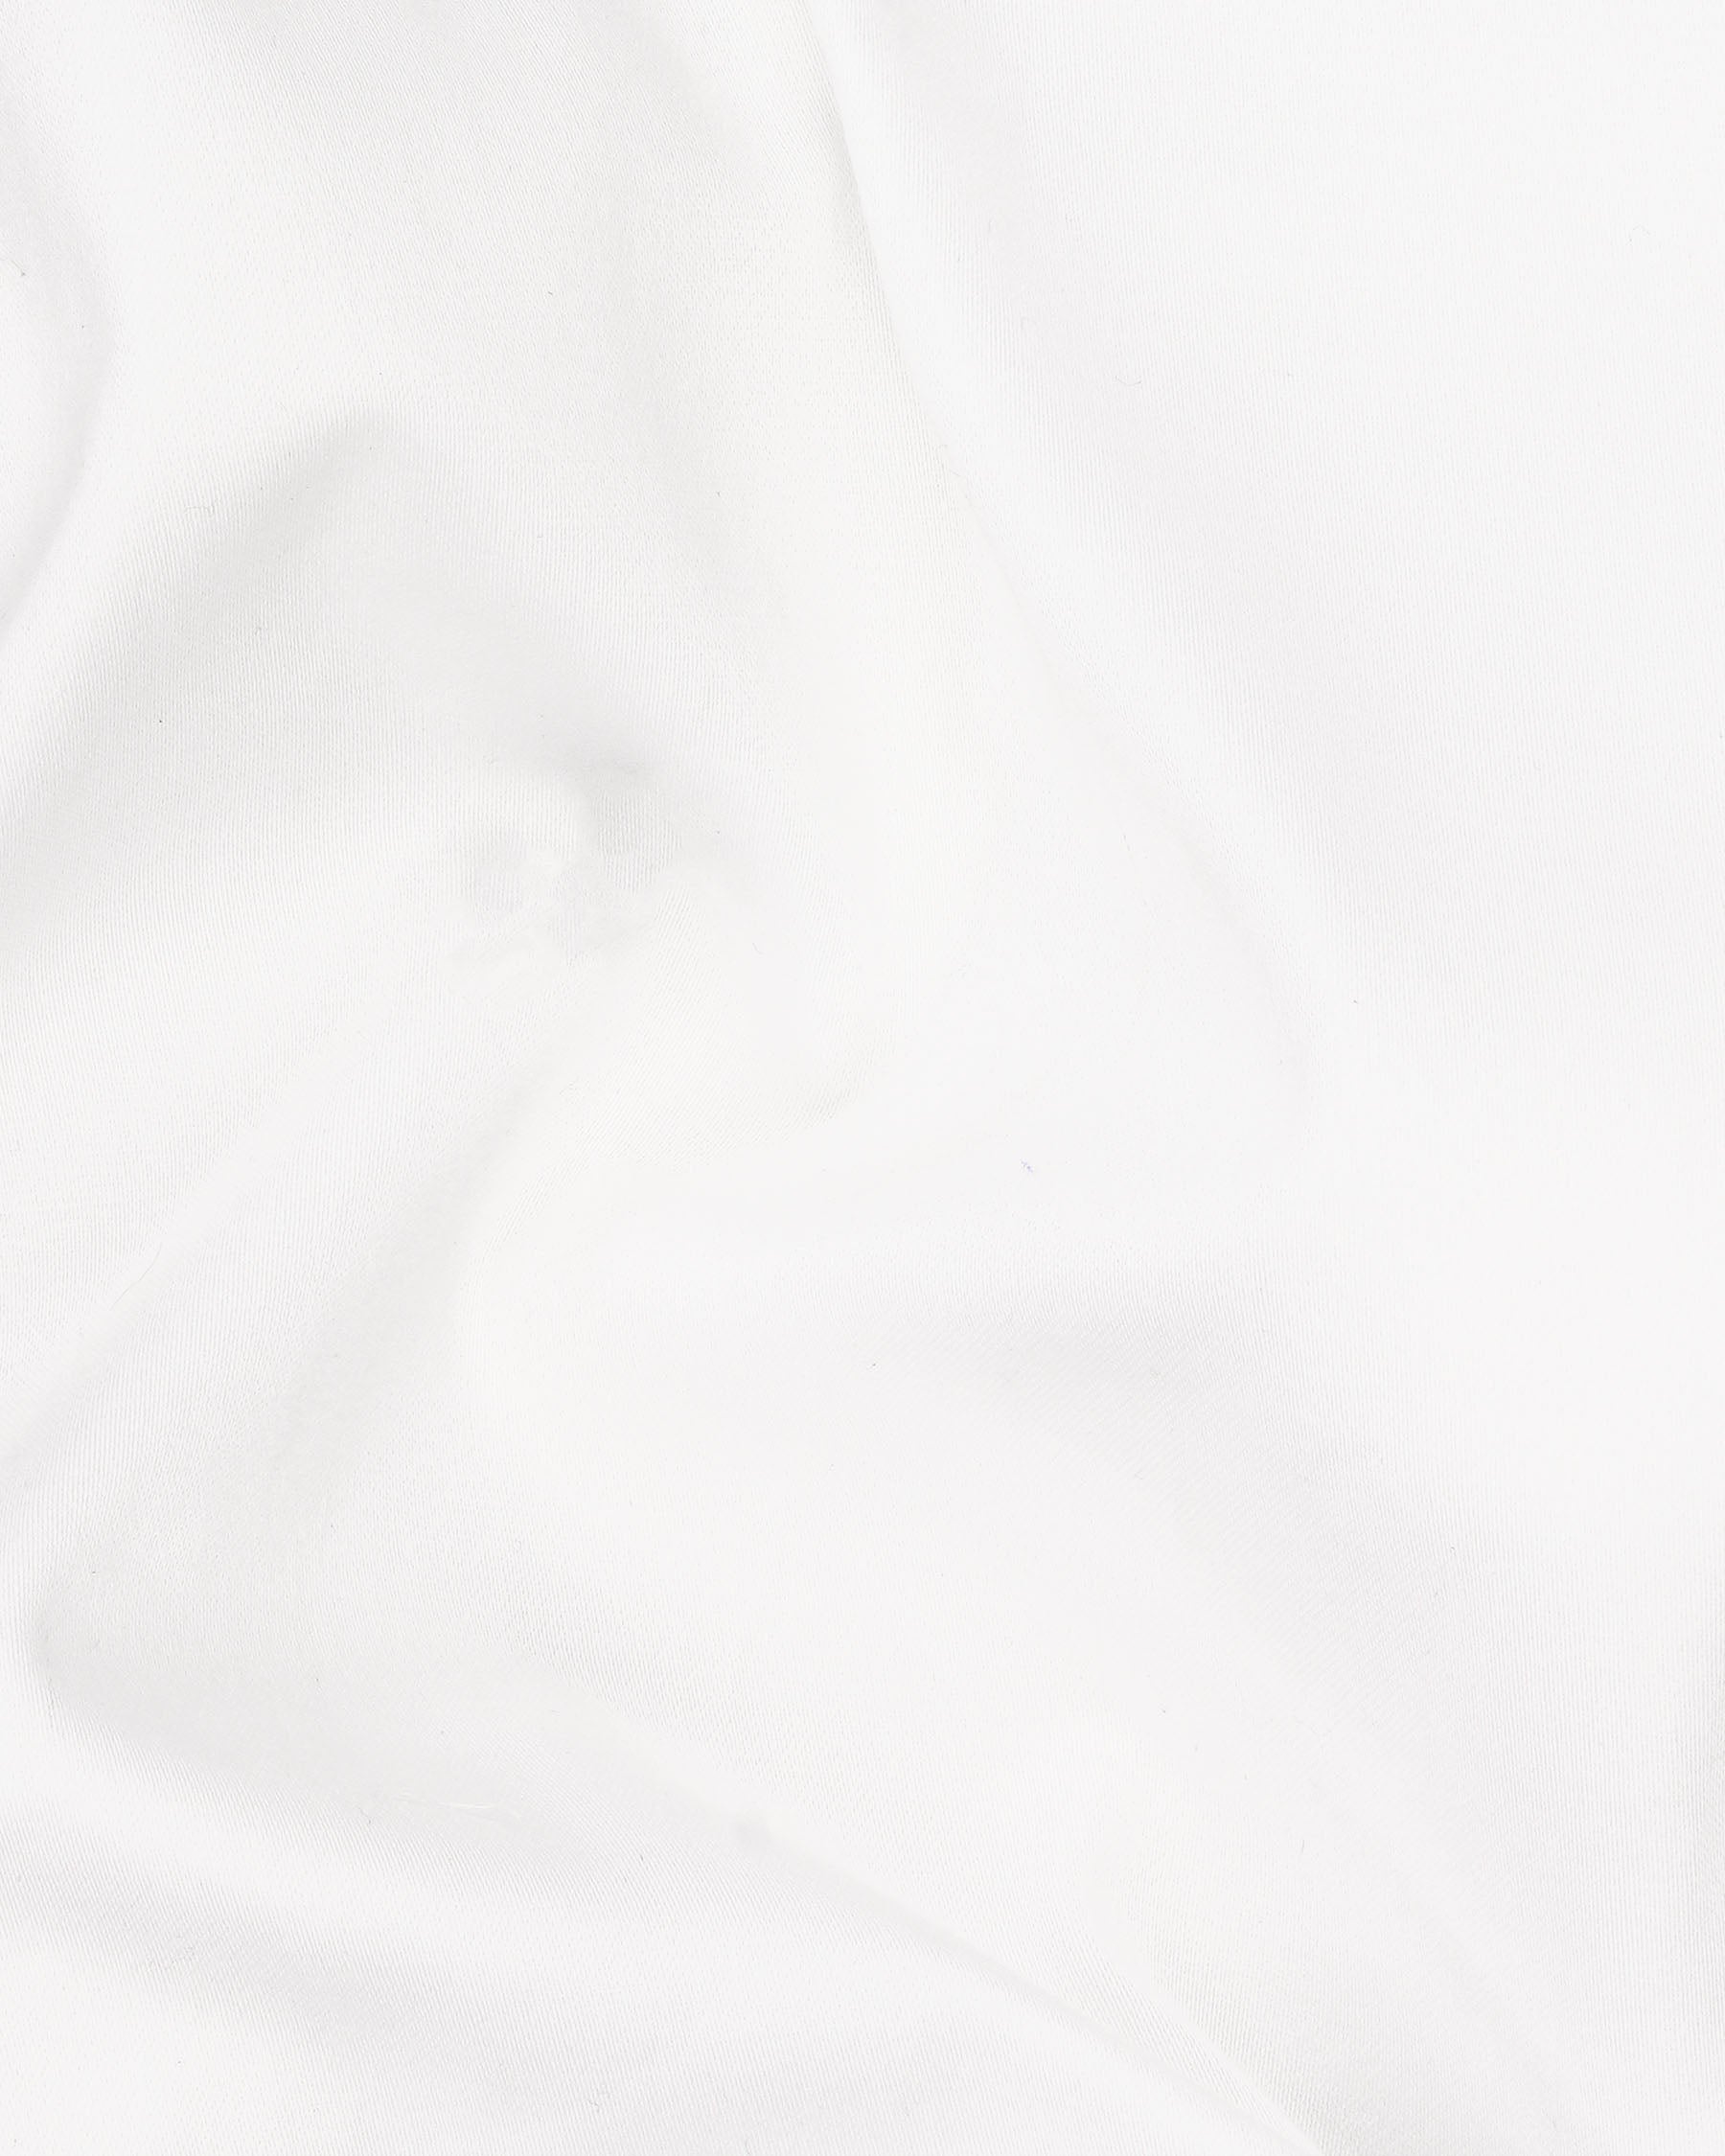 Bright White with Black Striped Super Soft Premium Cotton Designer Shorts SR152-28, SR152-30, SR152-32, SR152-34, SR152-36, SR152-38, SR152-40, SR152-42, SR152-44